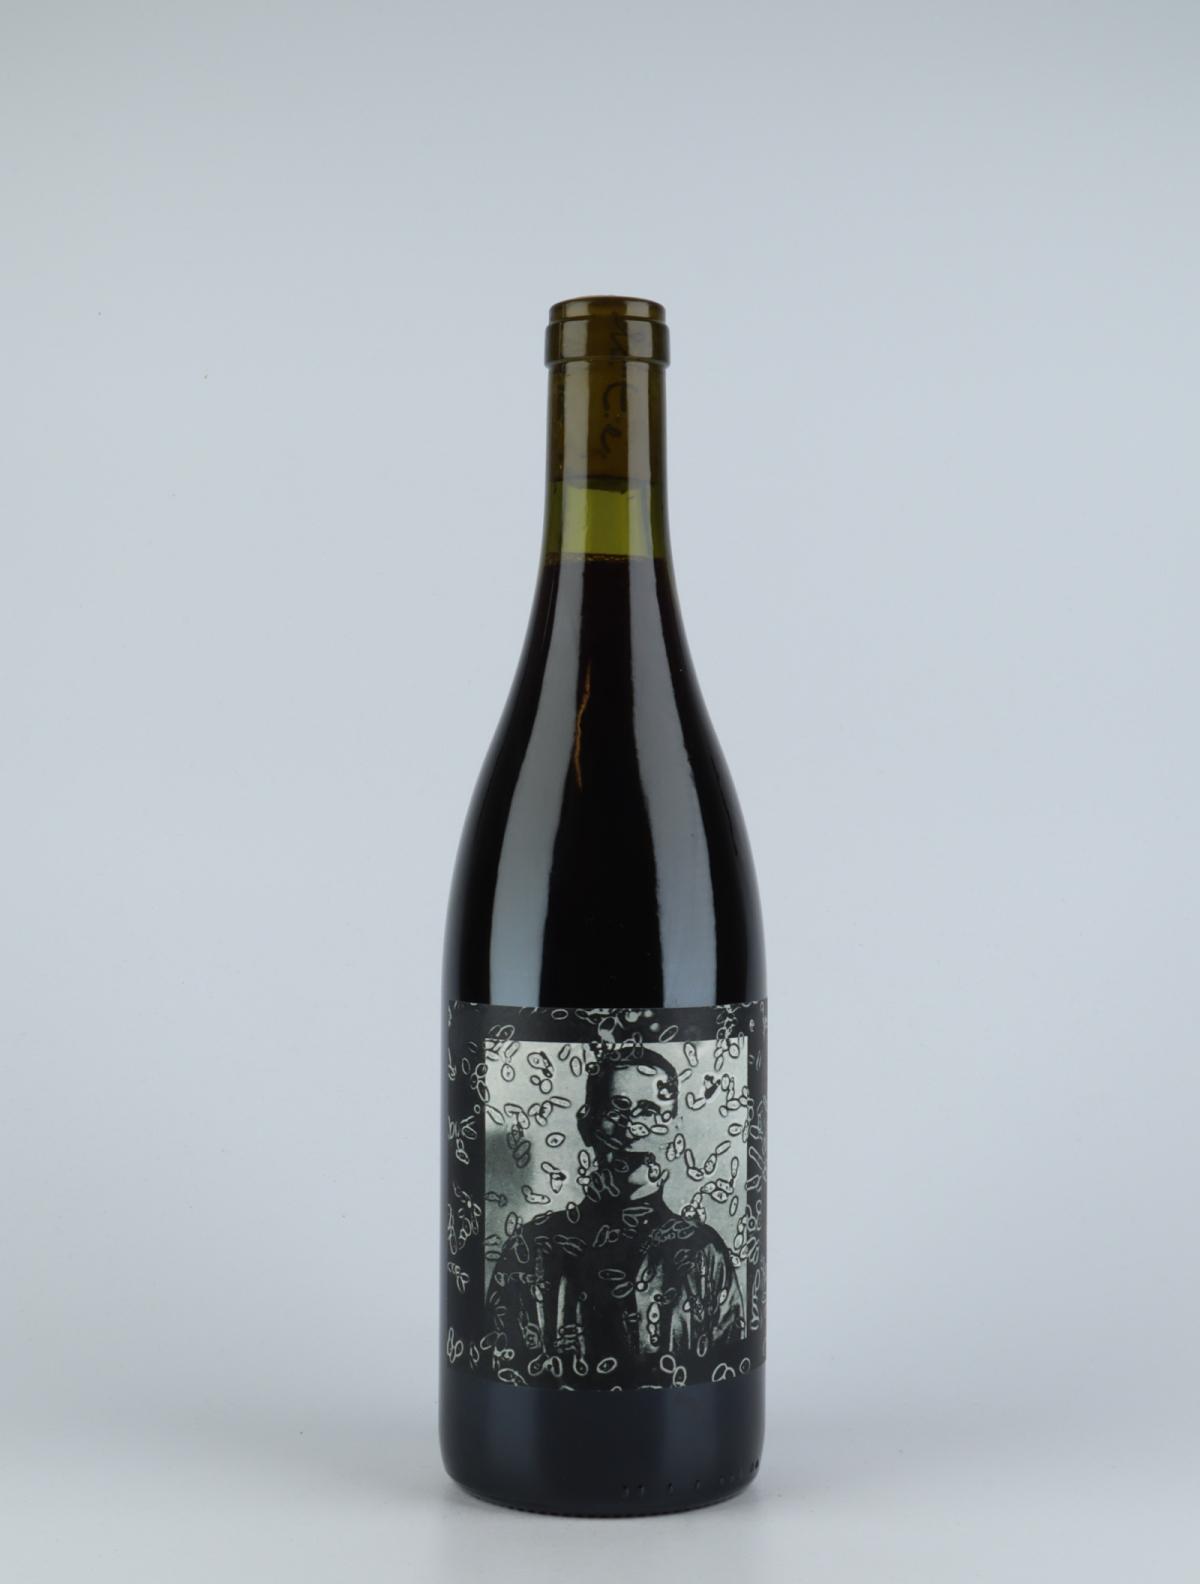 En flaske 2016 Bertolt Rødvin fra do.t.e Vini, Toscana i Italien